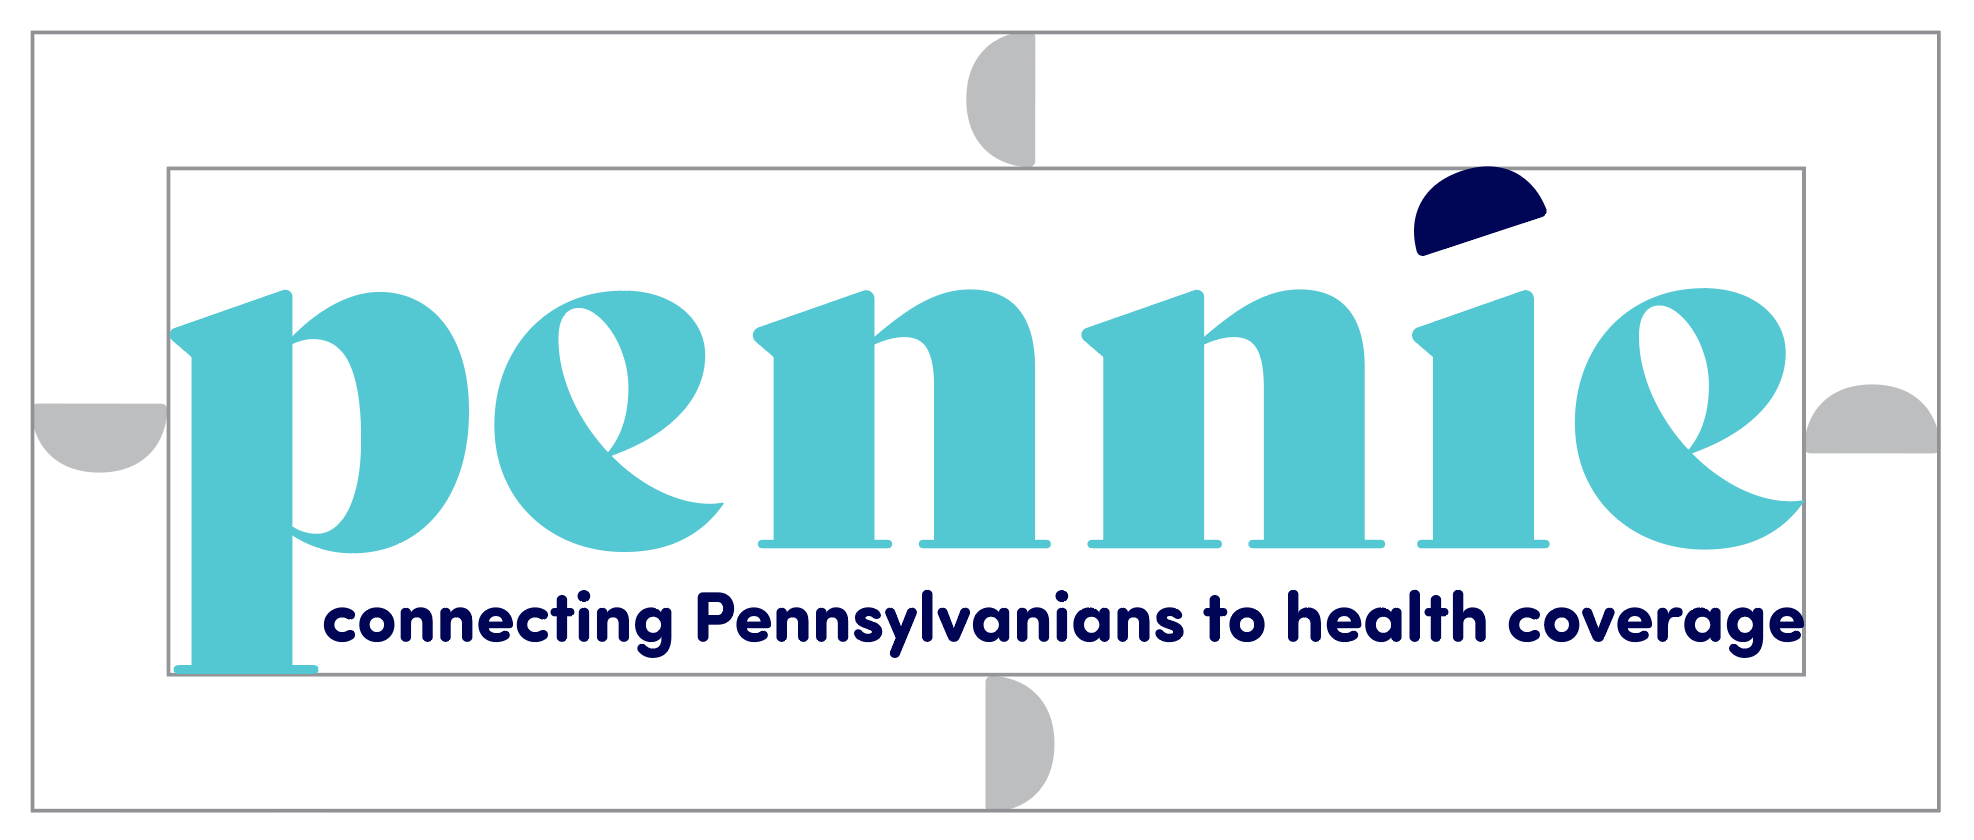 teal pennie logo mô tả khoảng cách tối thiểu